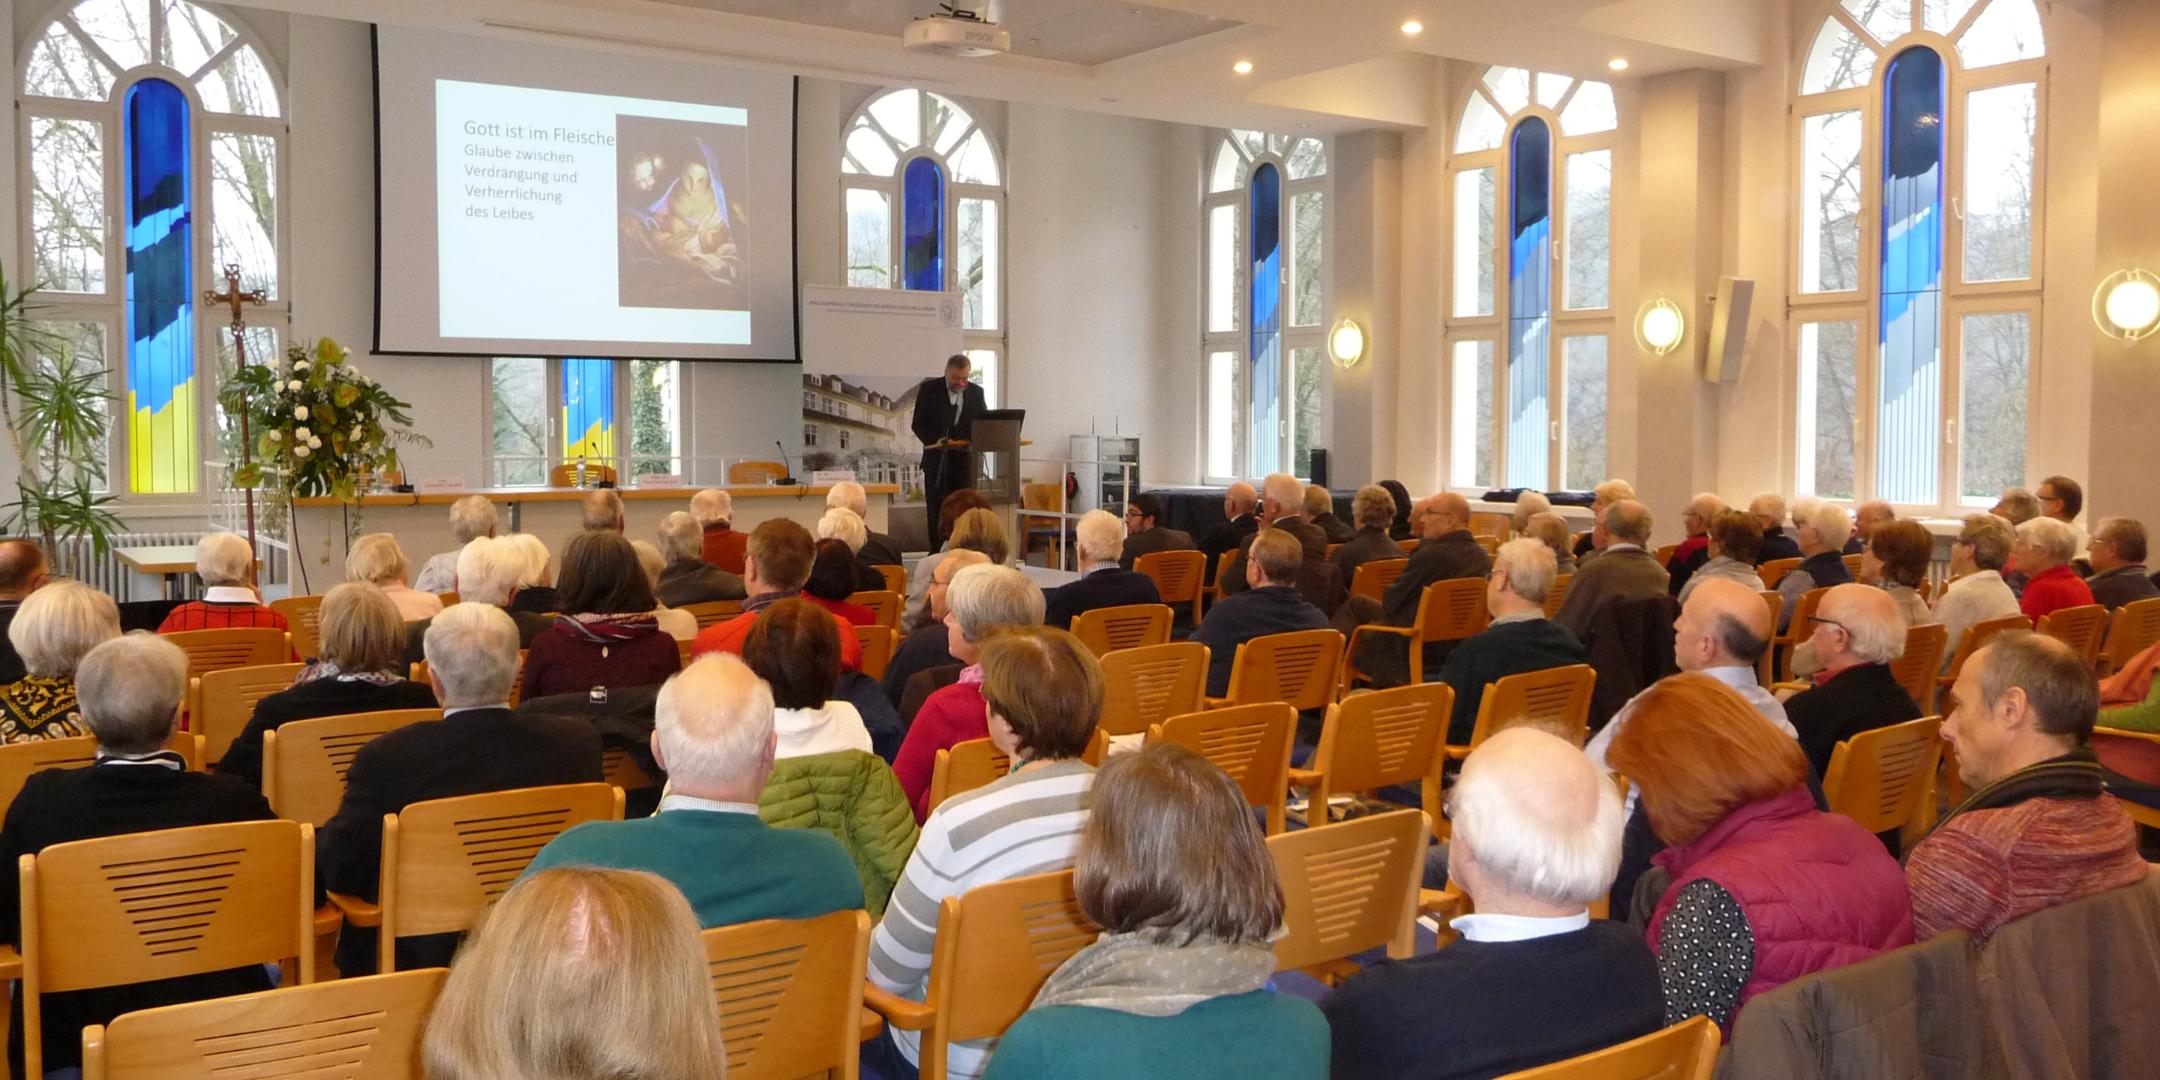 Der Akademietag in Vallendar startete mit dem Thema 'Gott ist im Fleische'.